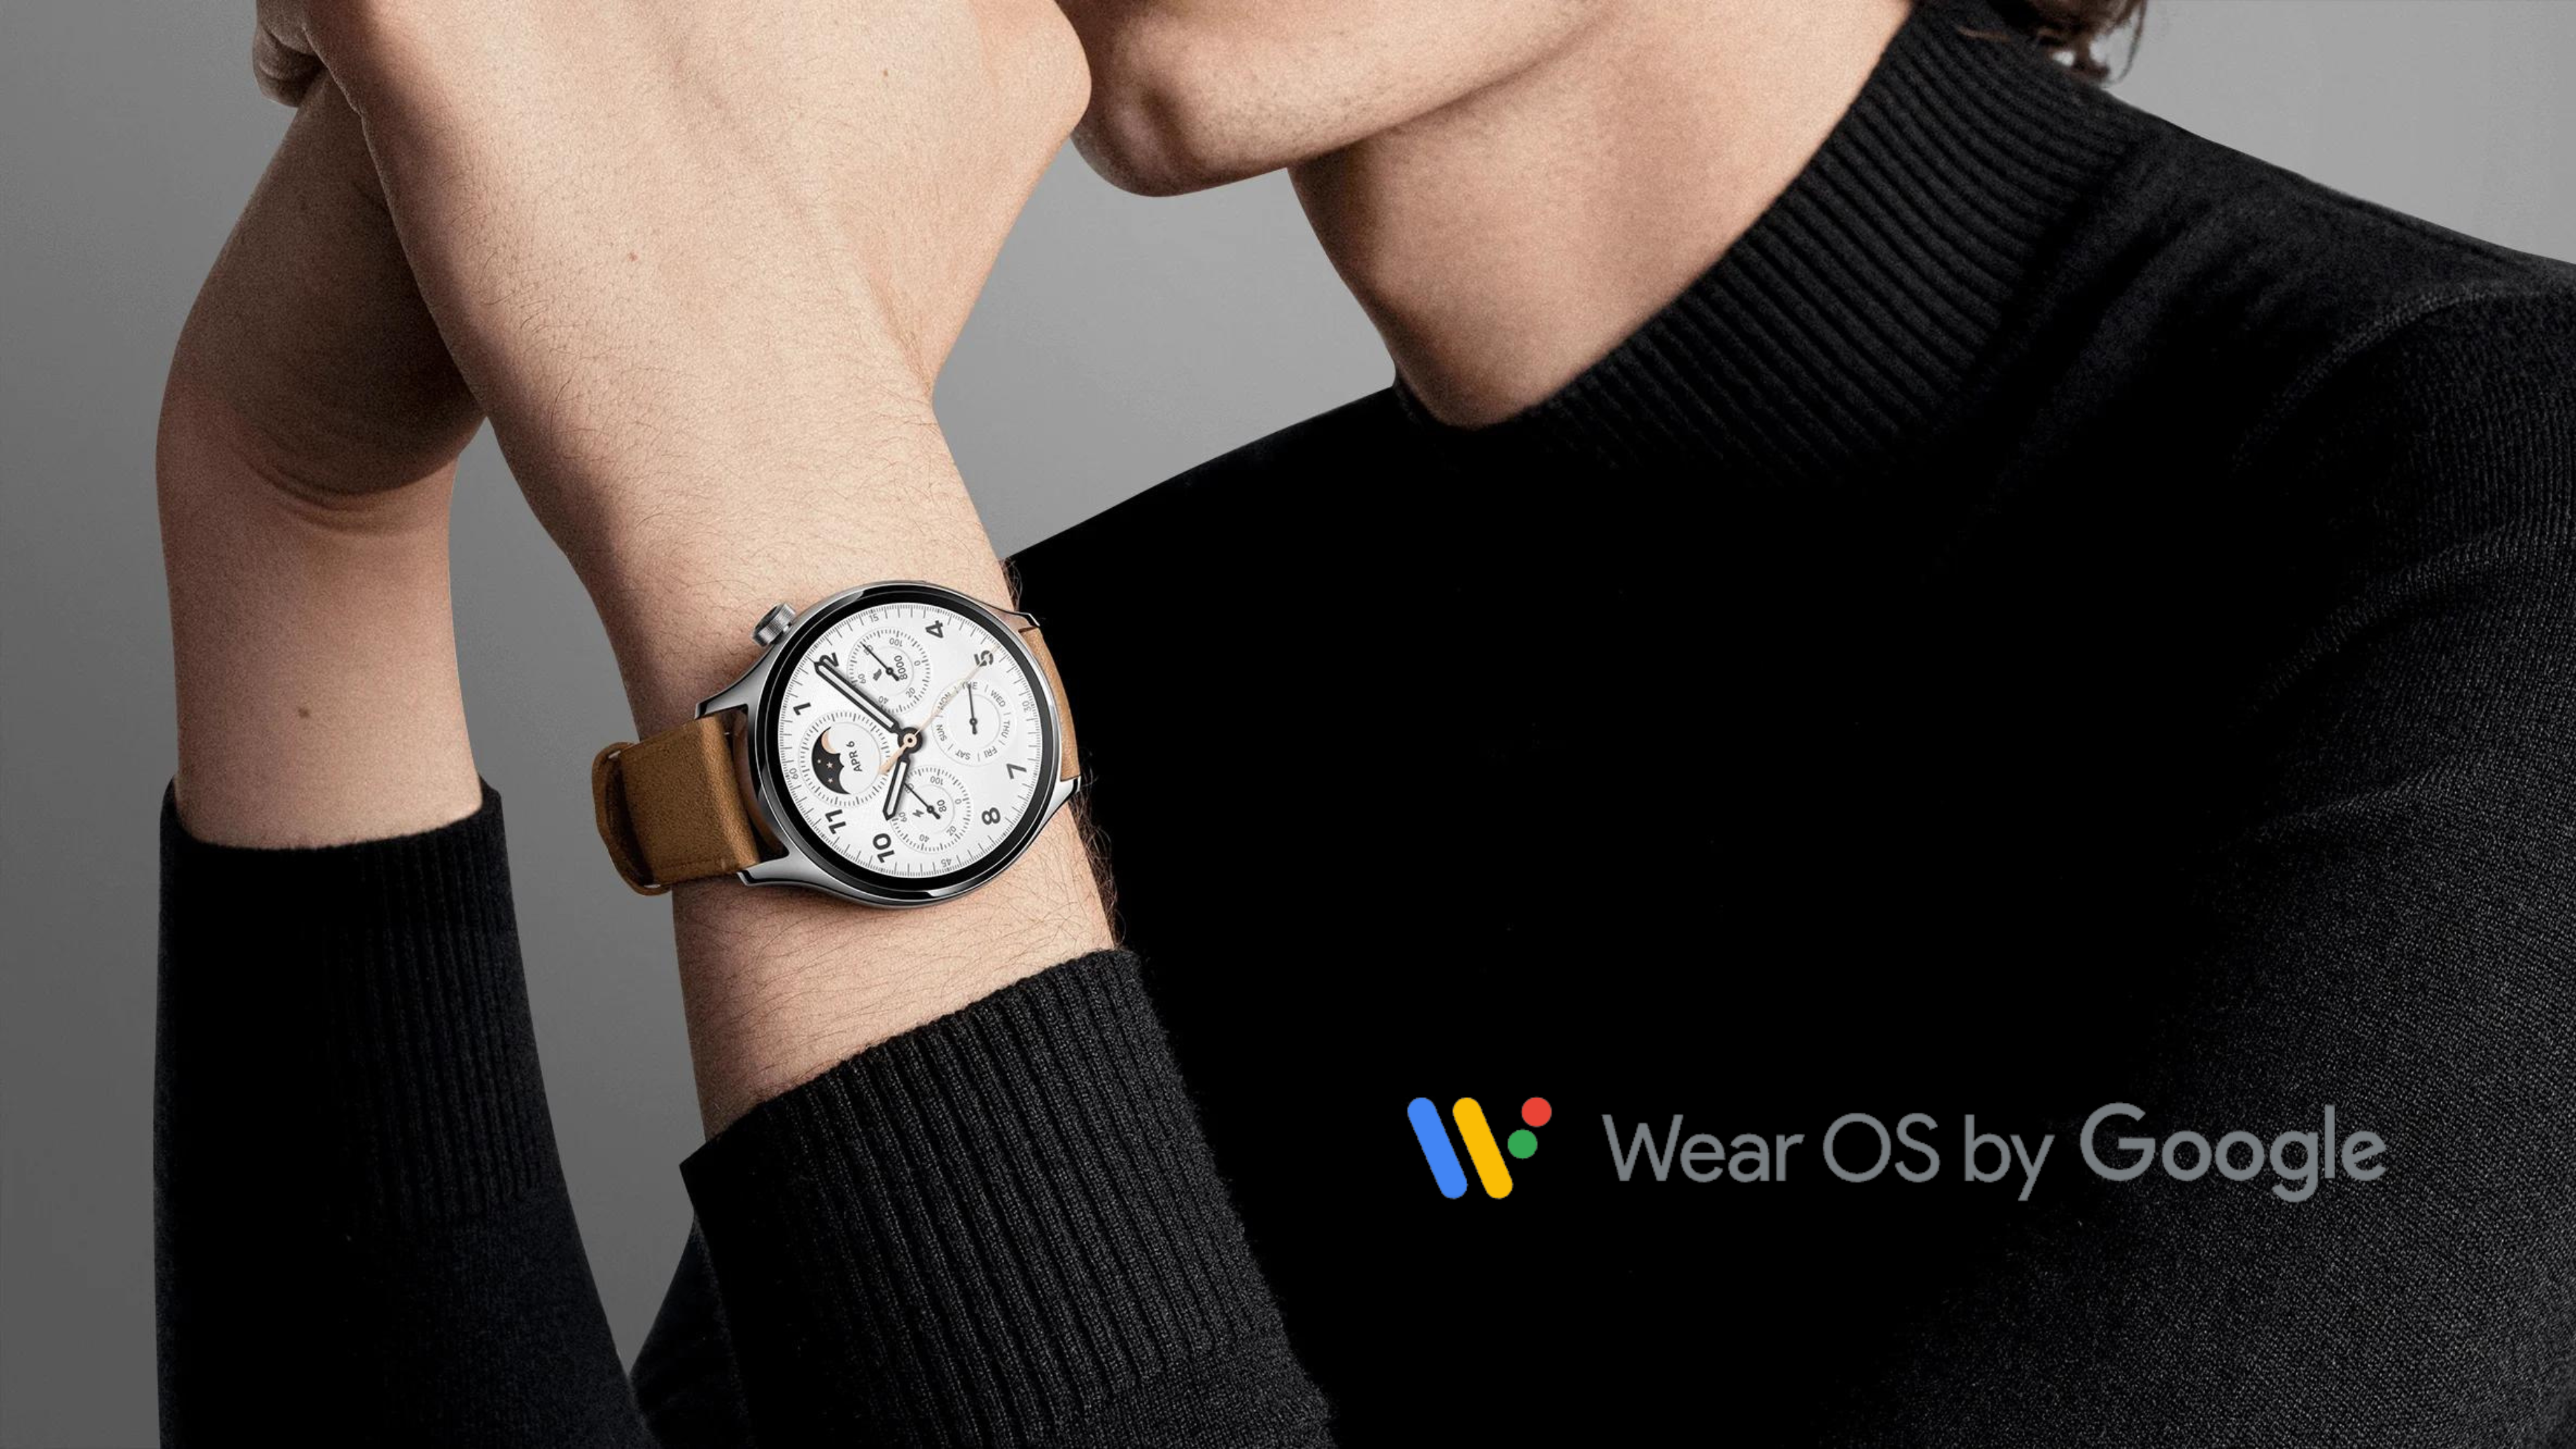 Xiaomi smartwatch with Google Wear OS logo 